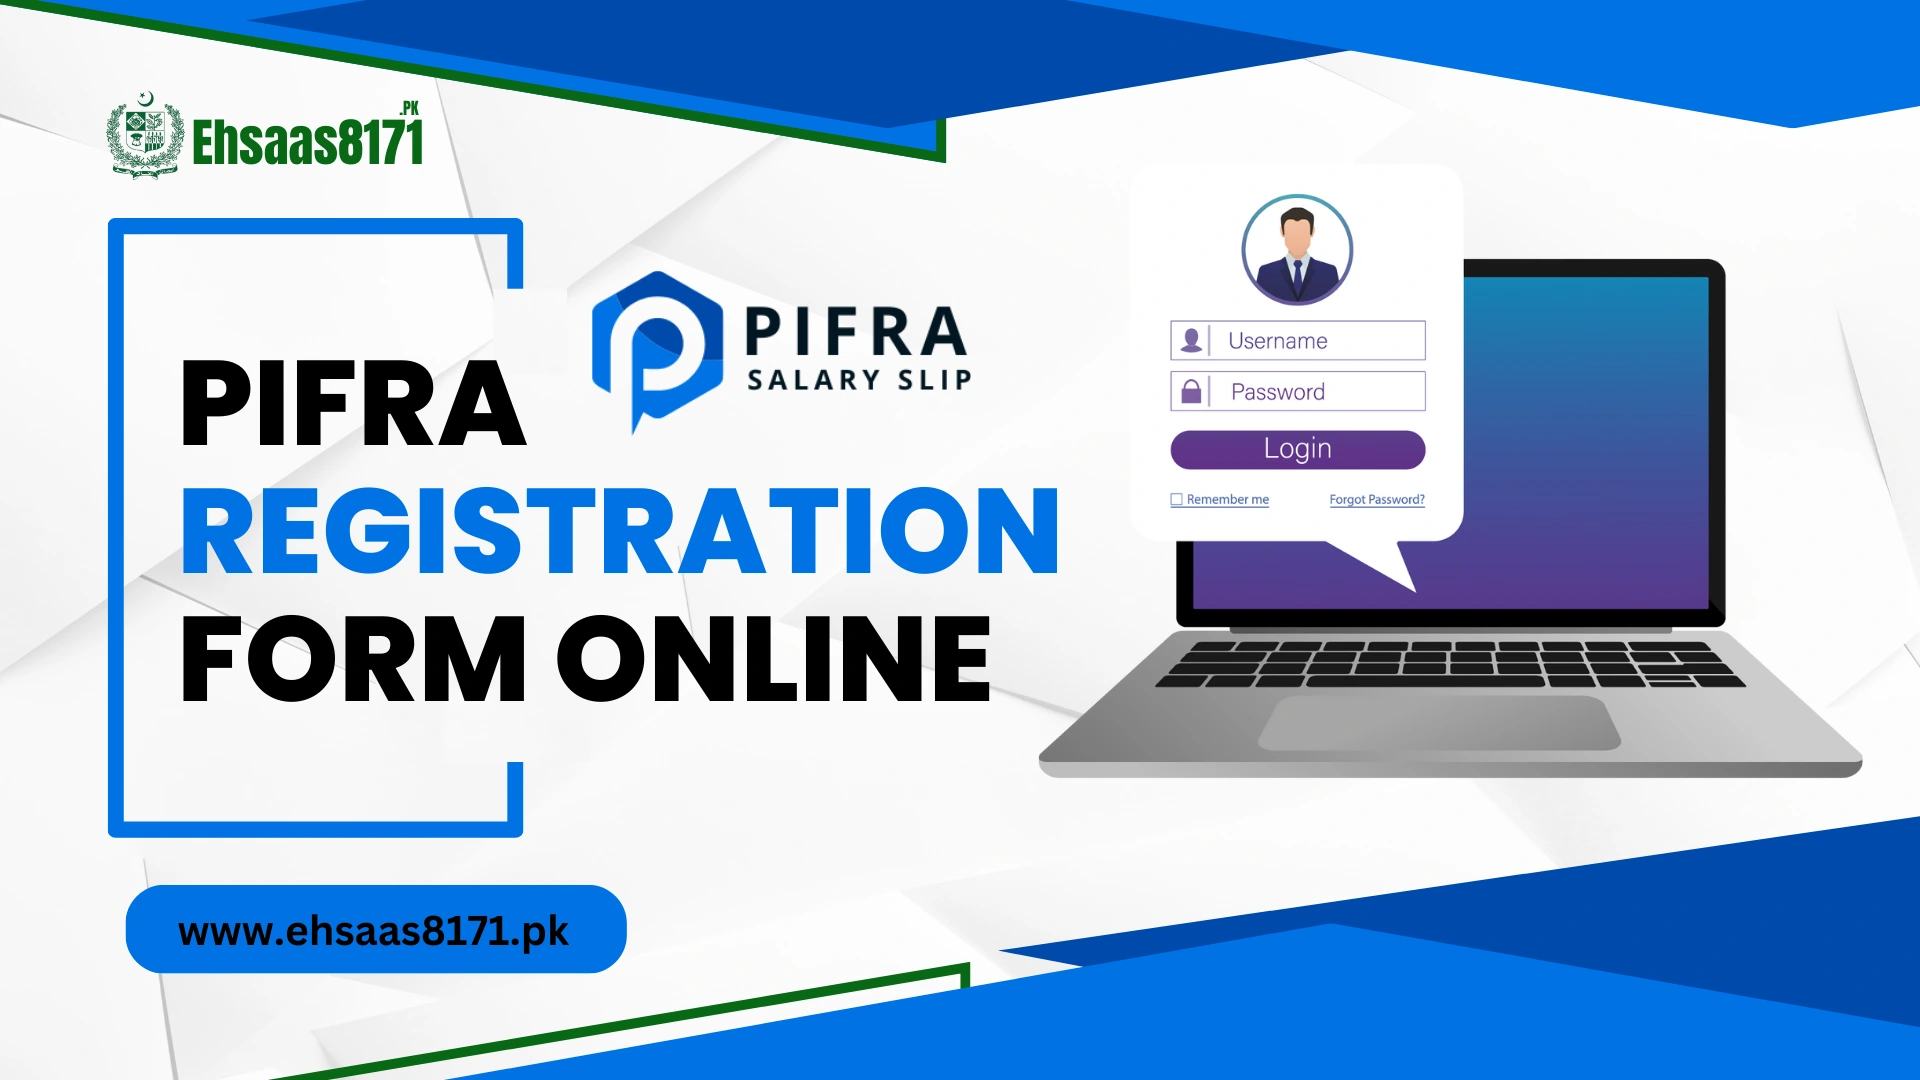 PIFRA Registration Form Online